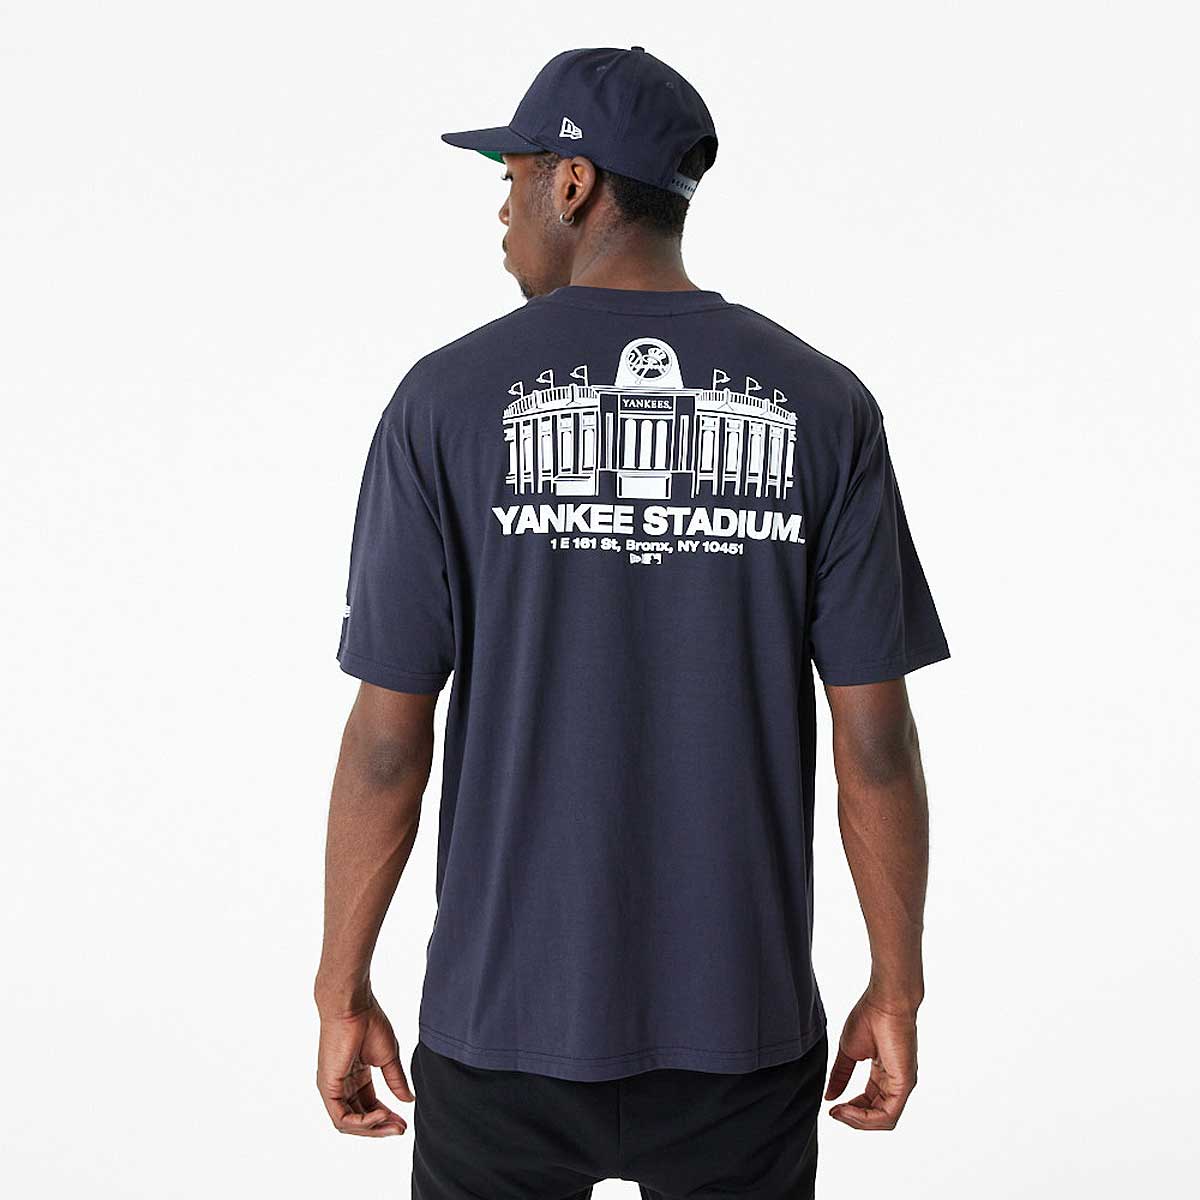 Image of New Era MLB New York Yankees Stadium Oversized T-shirt, Navy